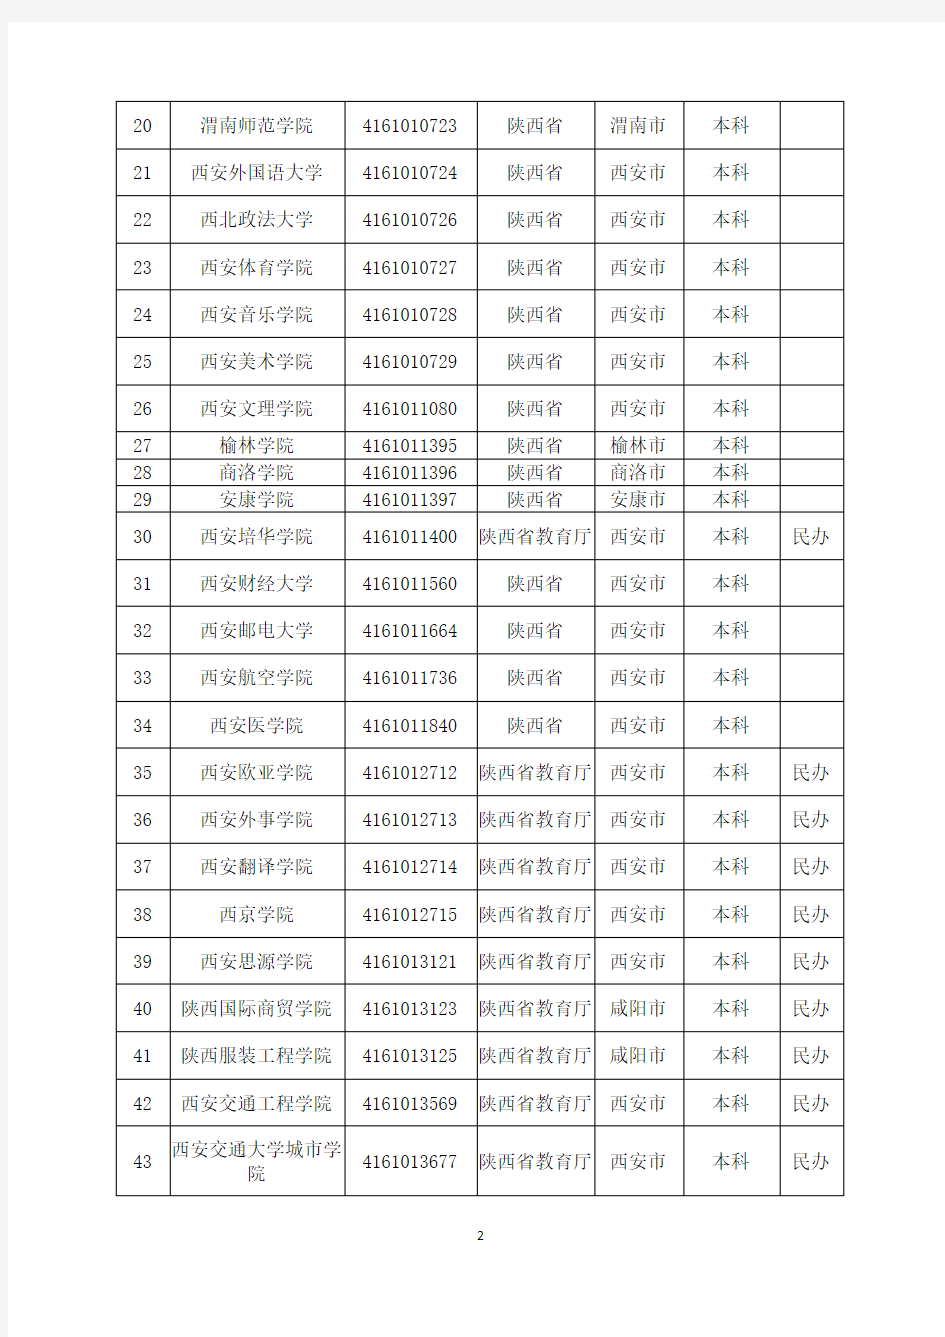 2019年度最新统计：陕西省普通高等学校名录(95所)